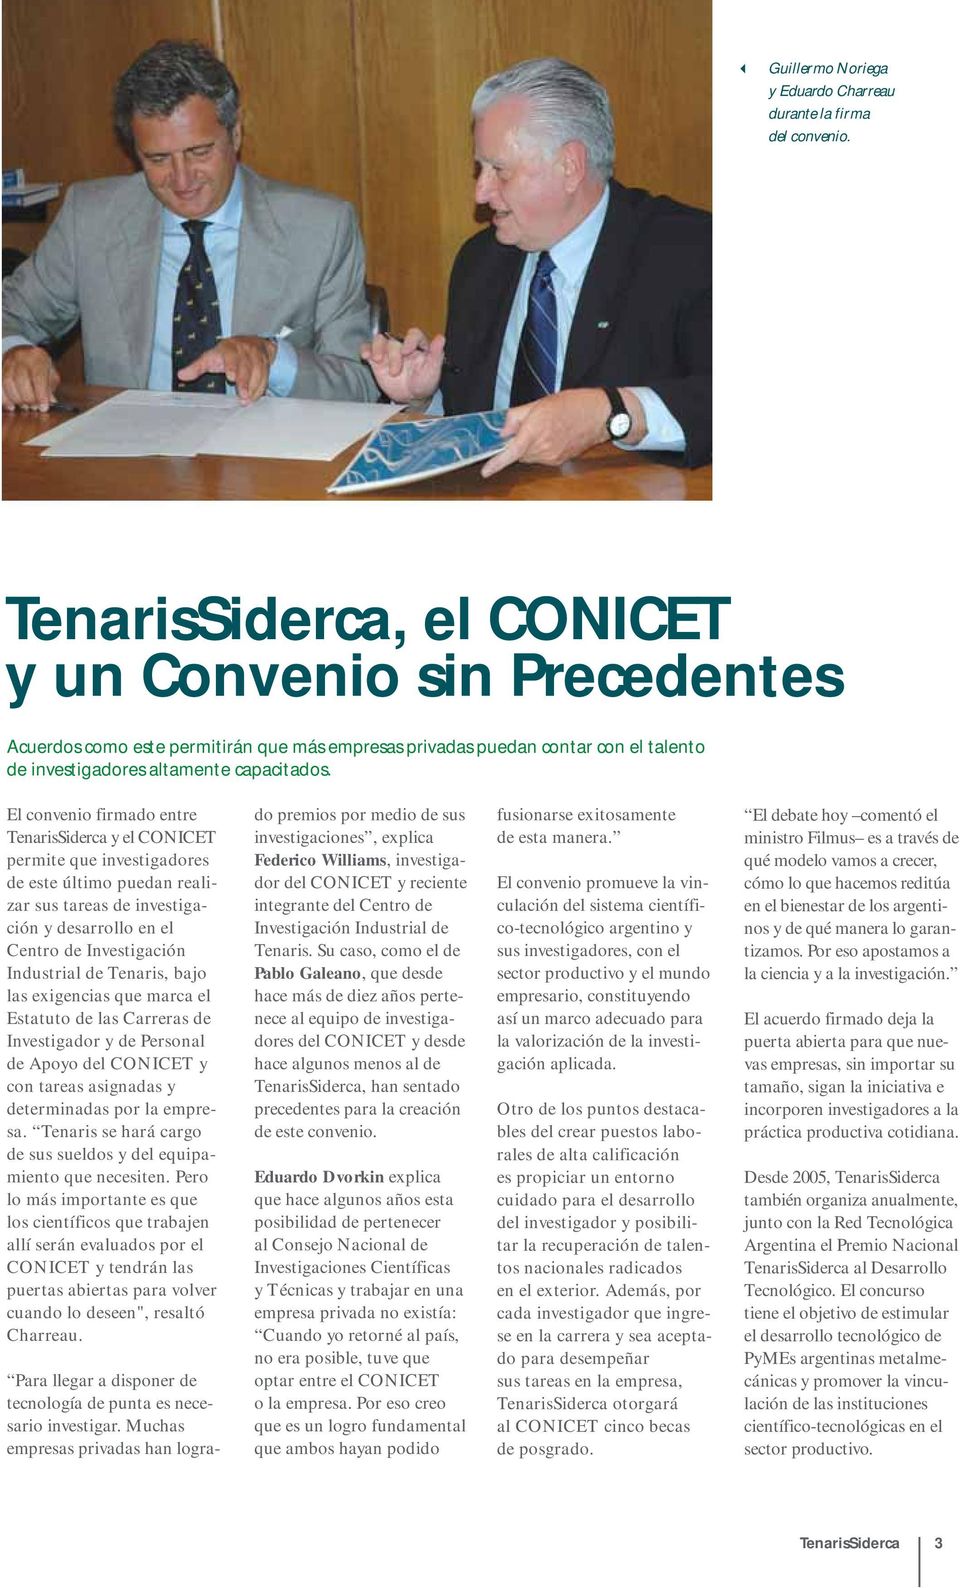 El convenio firmado entre TenarisSiderca y el CONICET permite que investigadores de este último puedan realizar sus tareas de investigación y desarrollo en el Centro de Investigación Industrial de